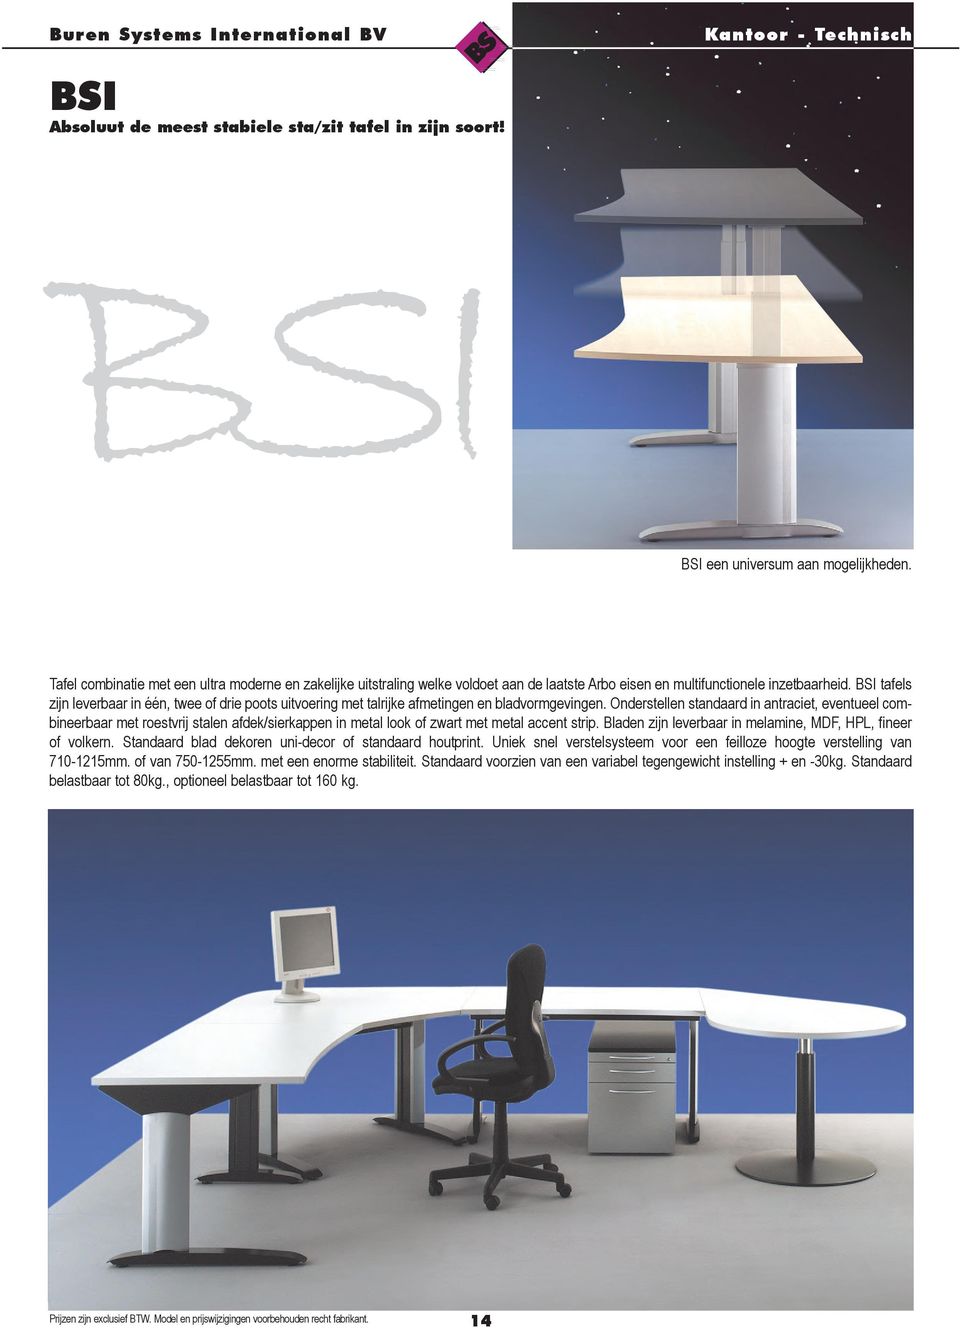 BSI tafels zijn leverbaar in één, twee of drie poots uitvoering met talrijke afmetingen en bladvormgevingen.